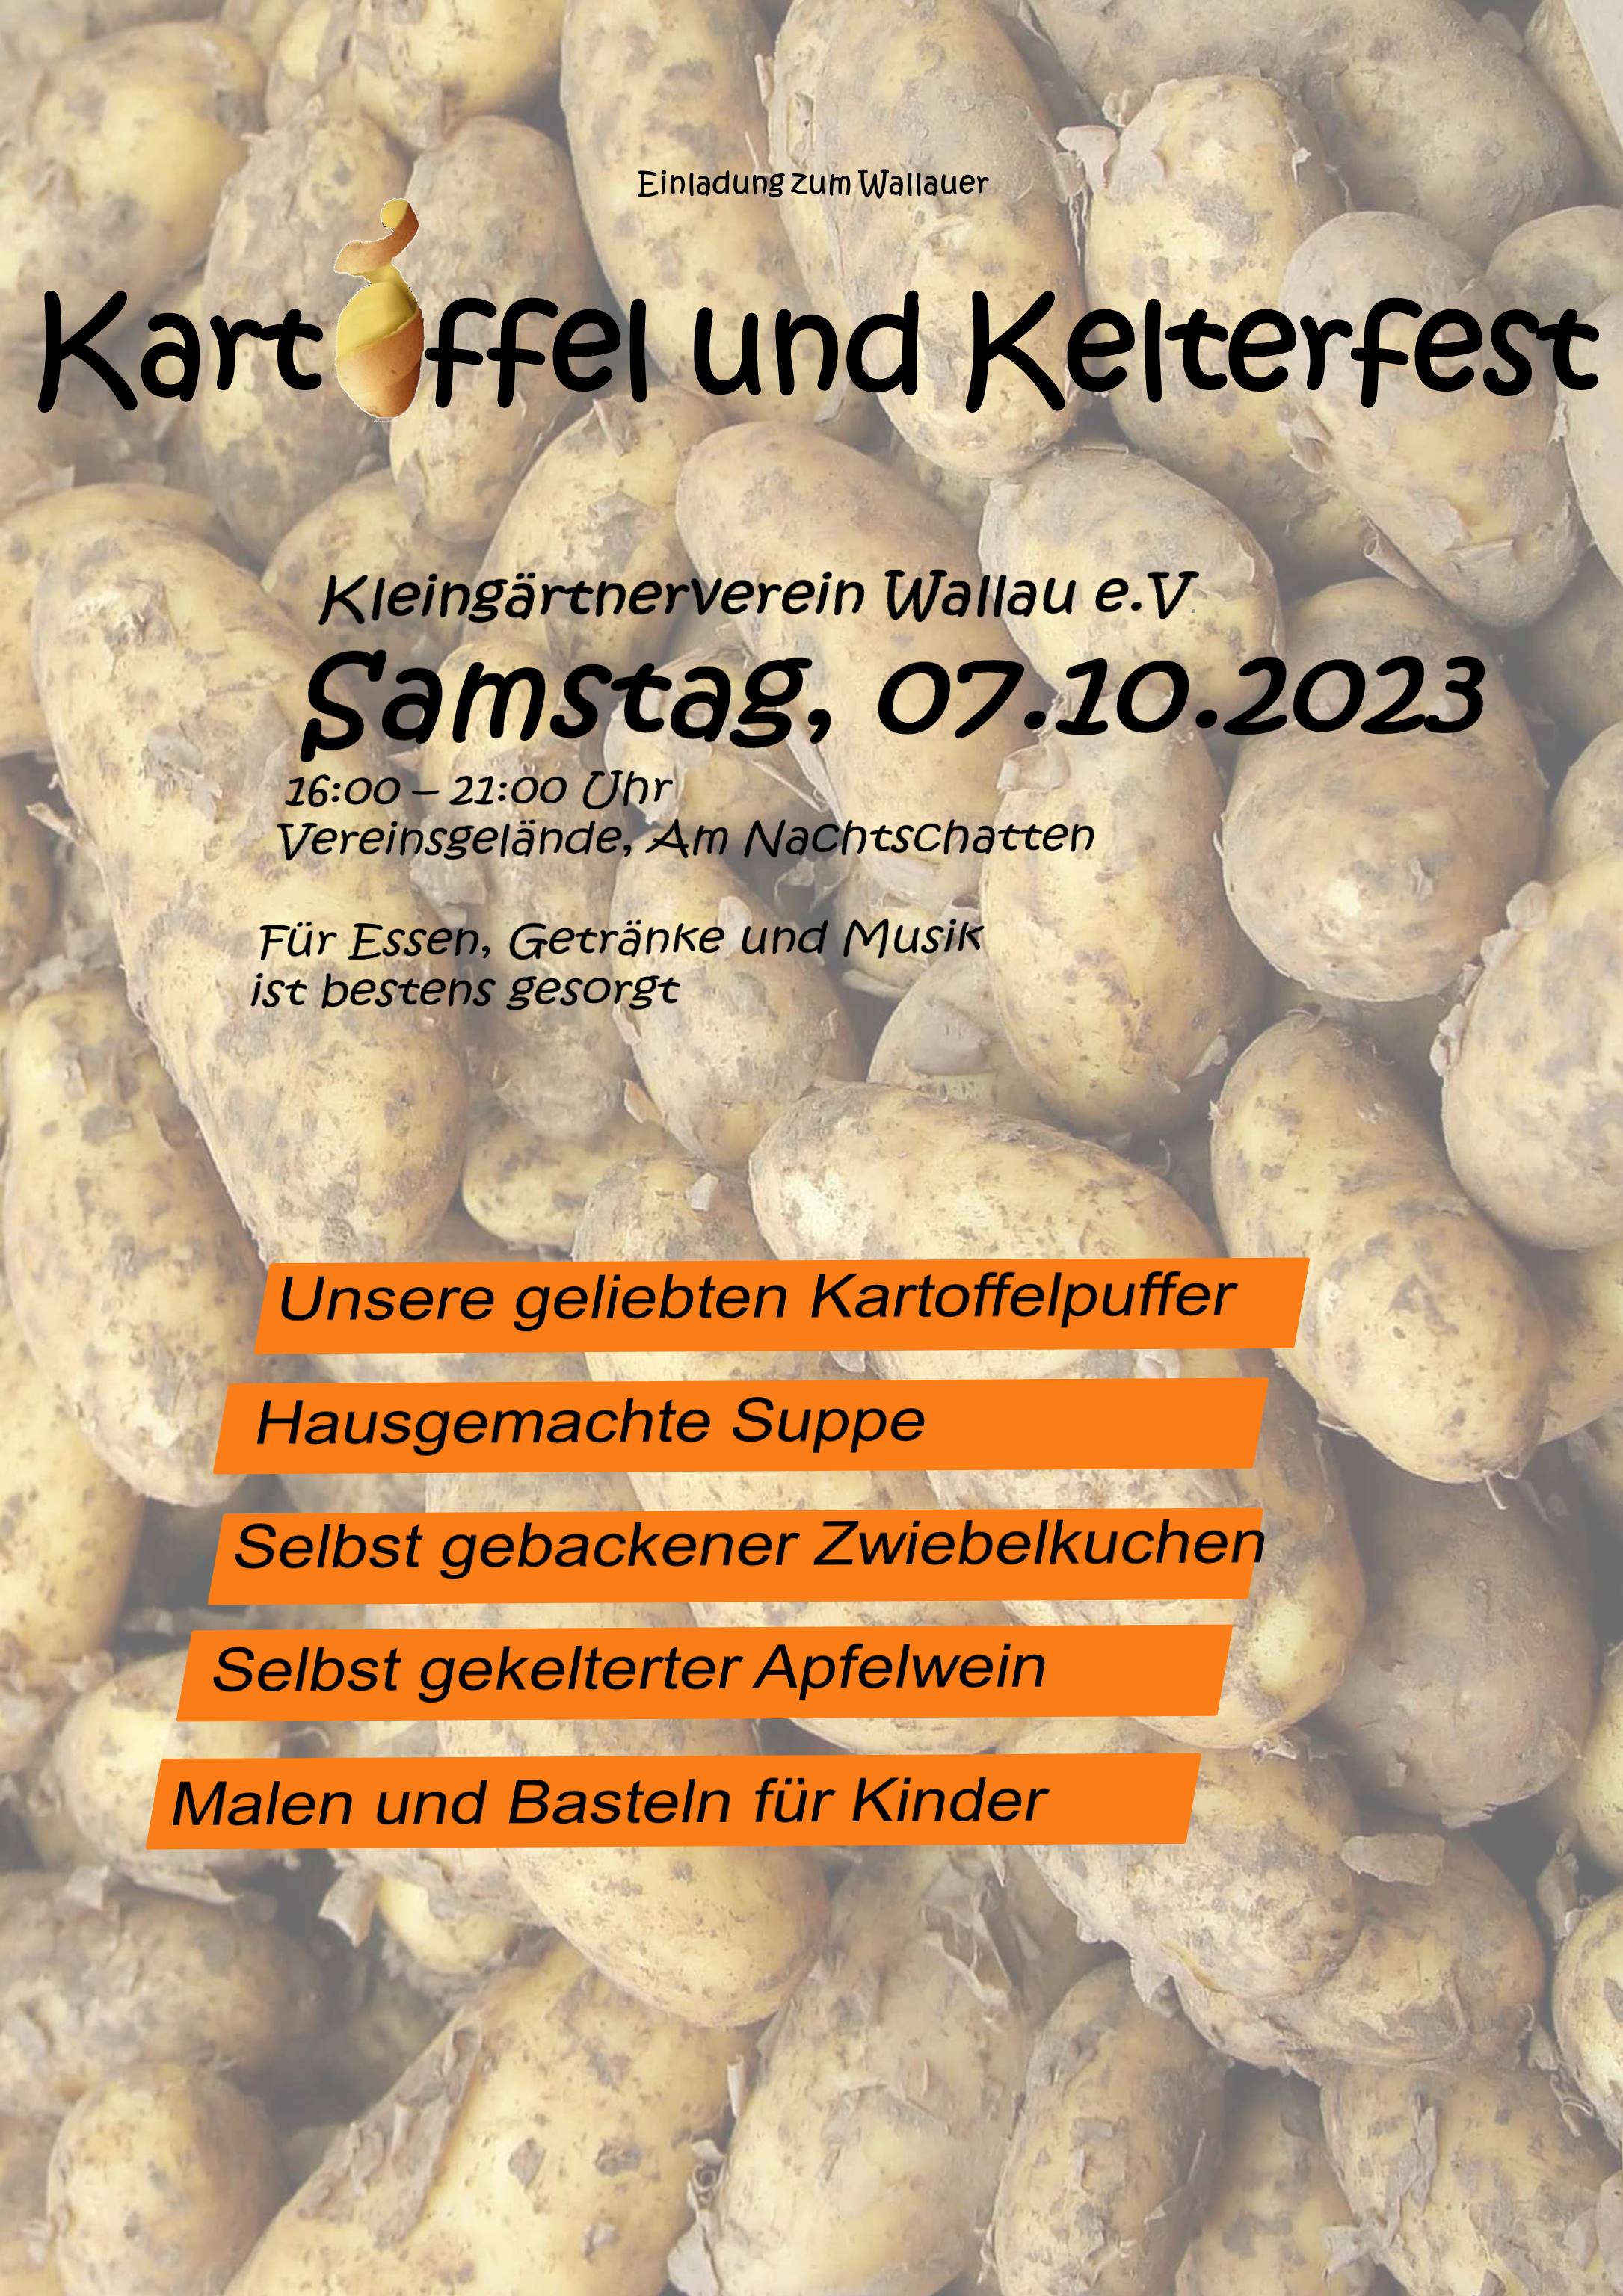 kartoffelfest2019